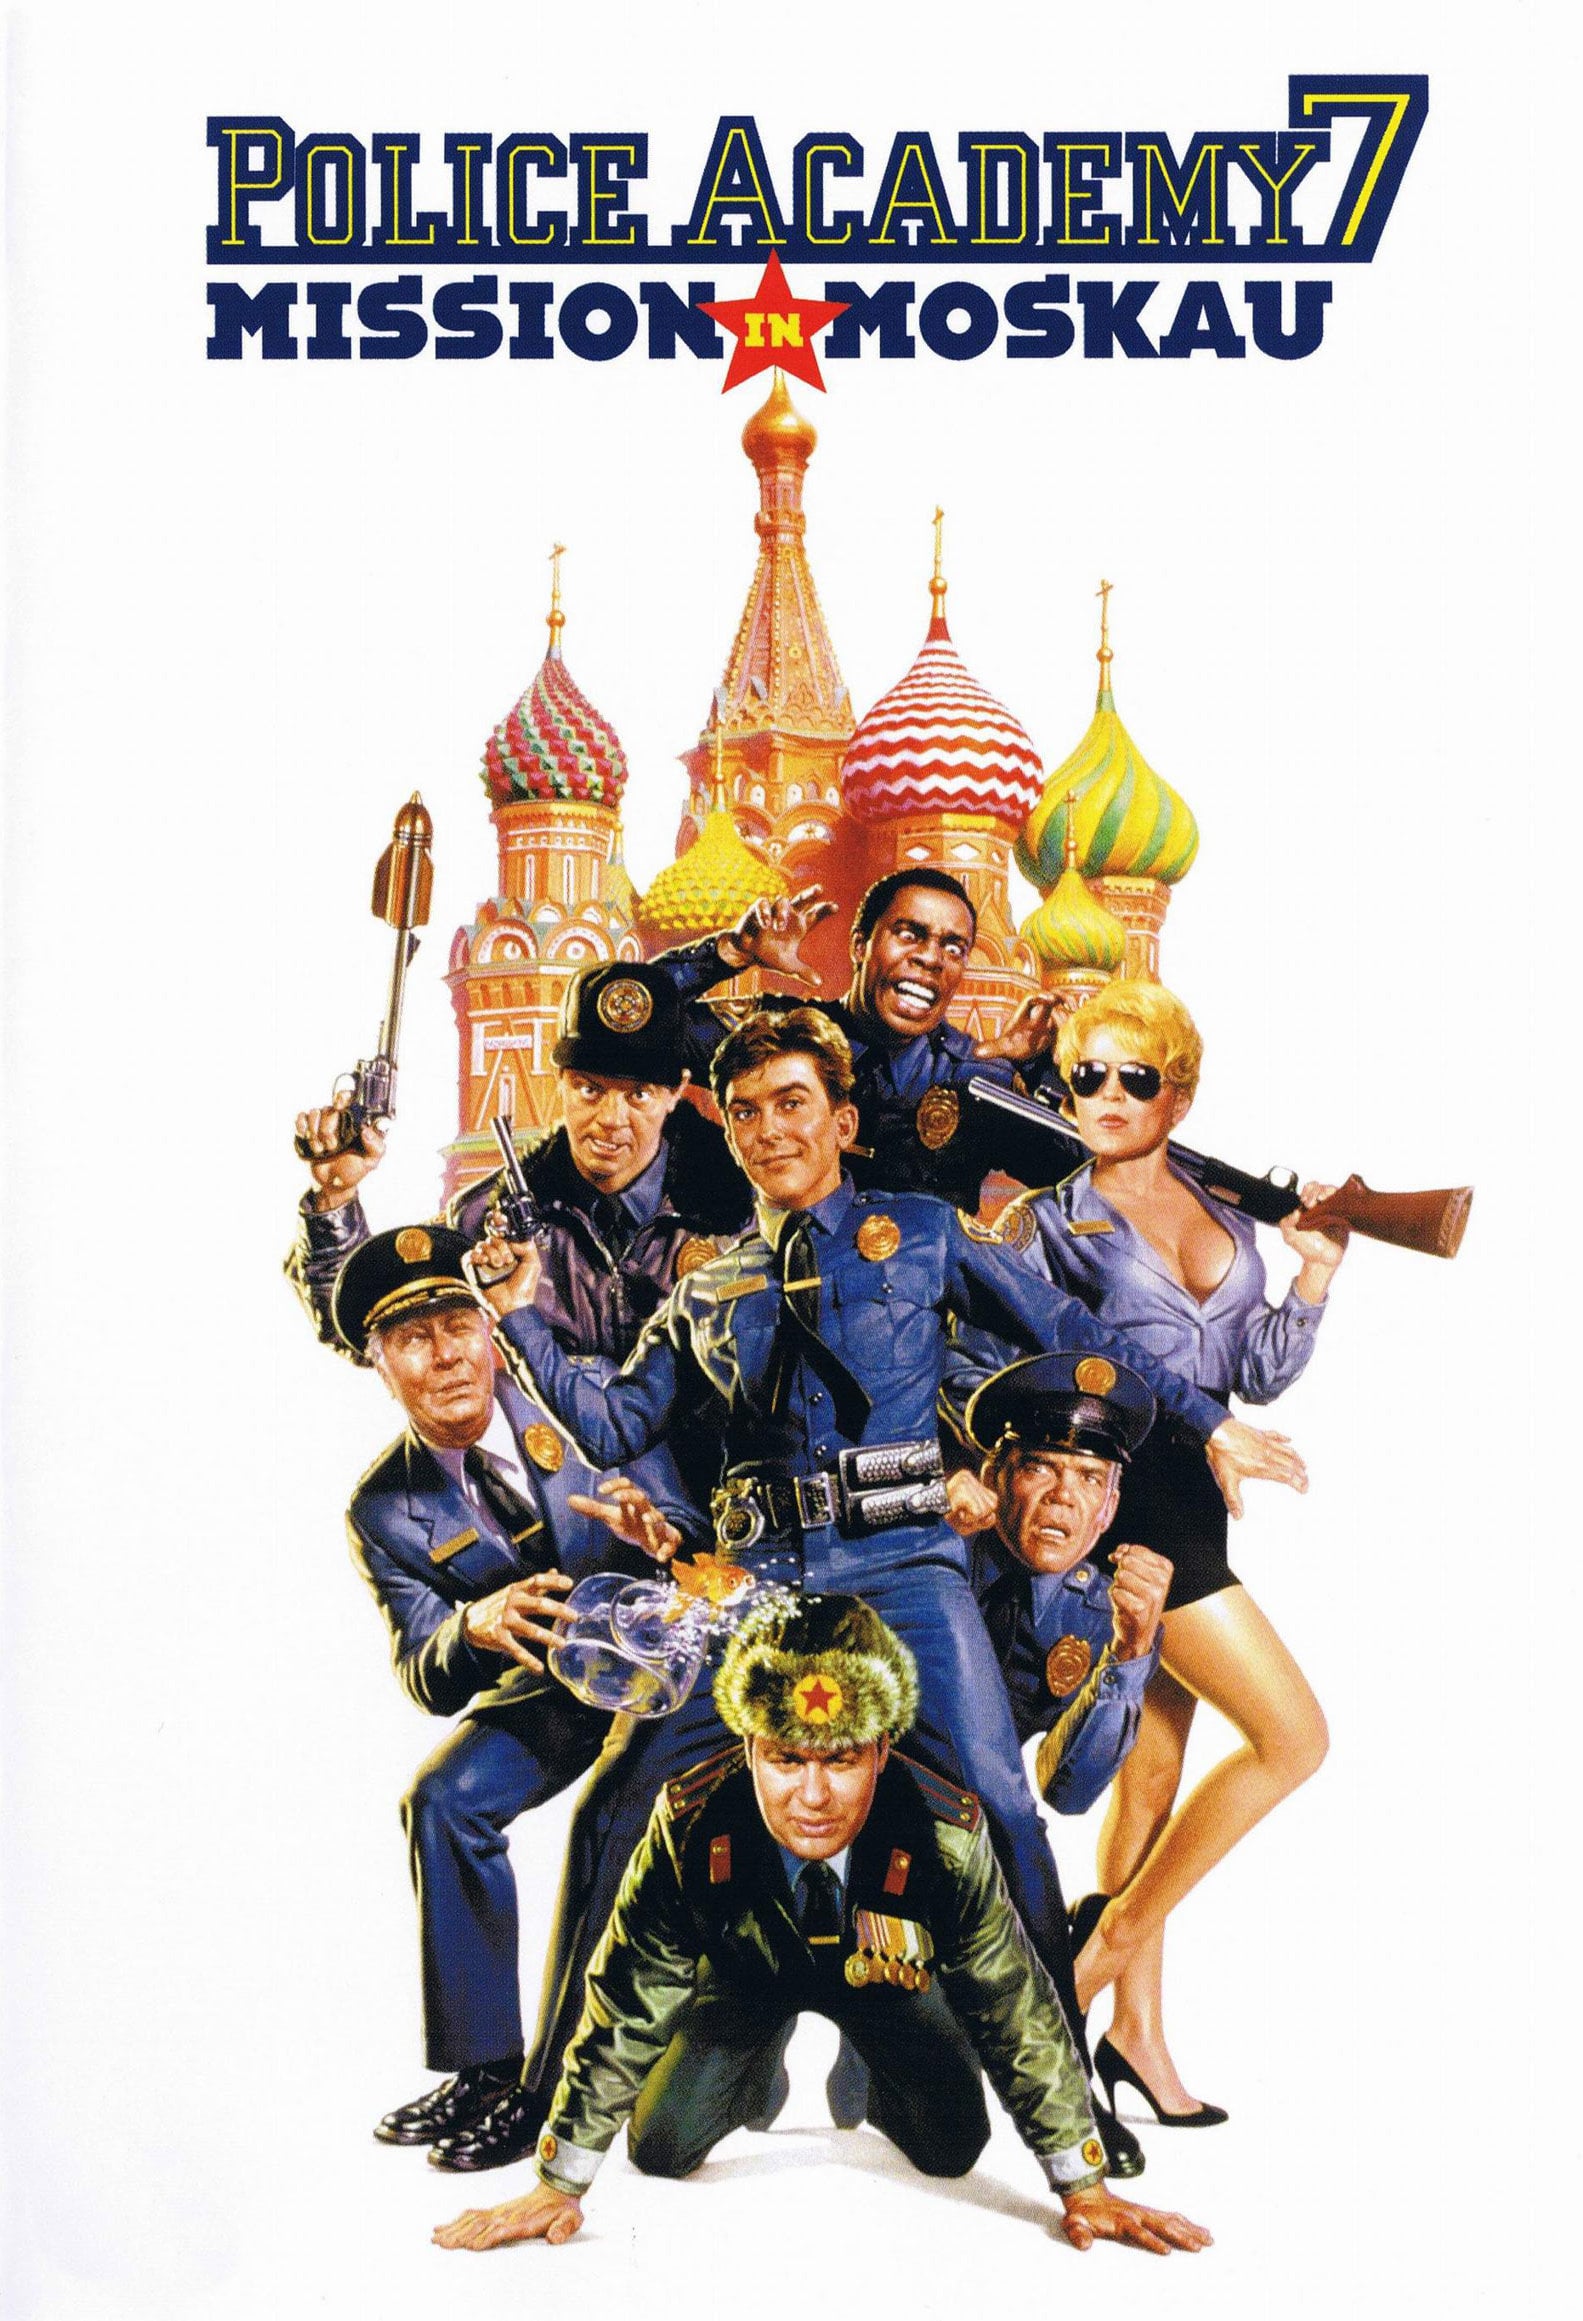 Plakat von "Police Academy 7 - Mission in Moskau"